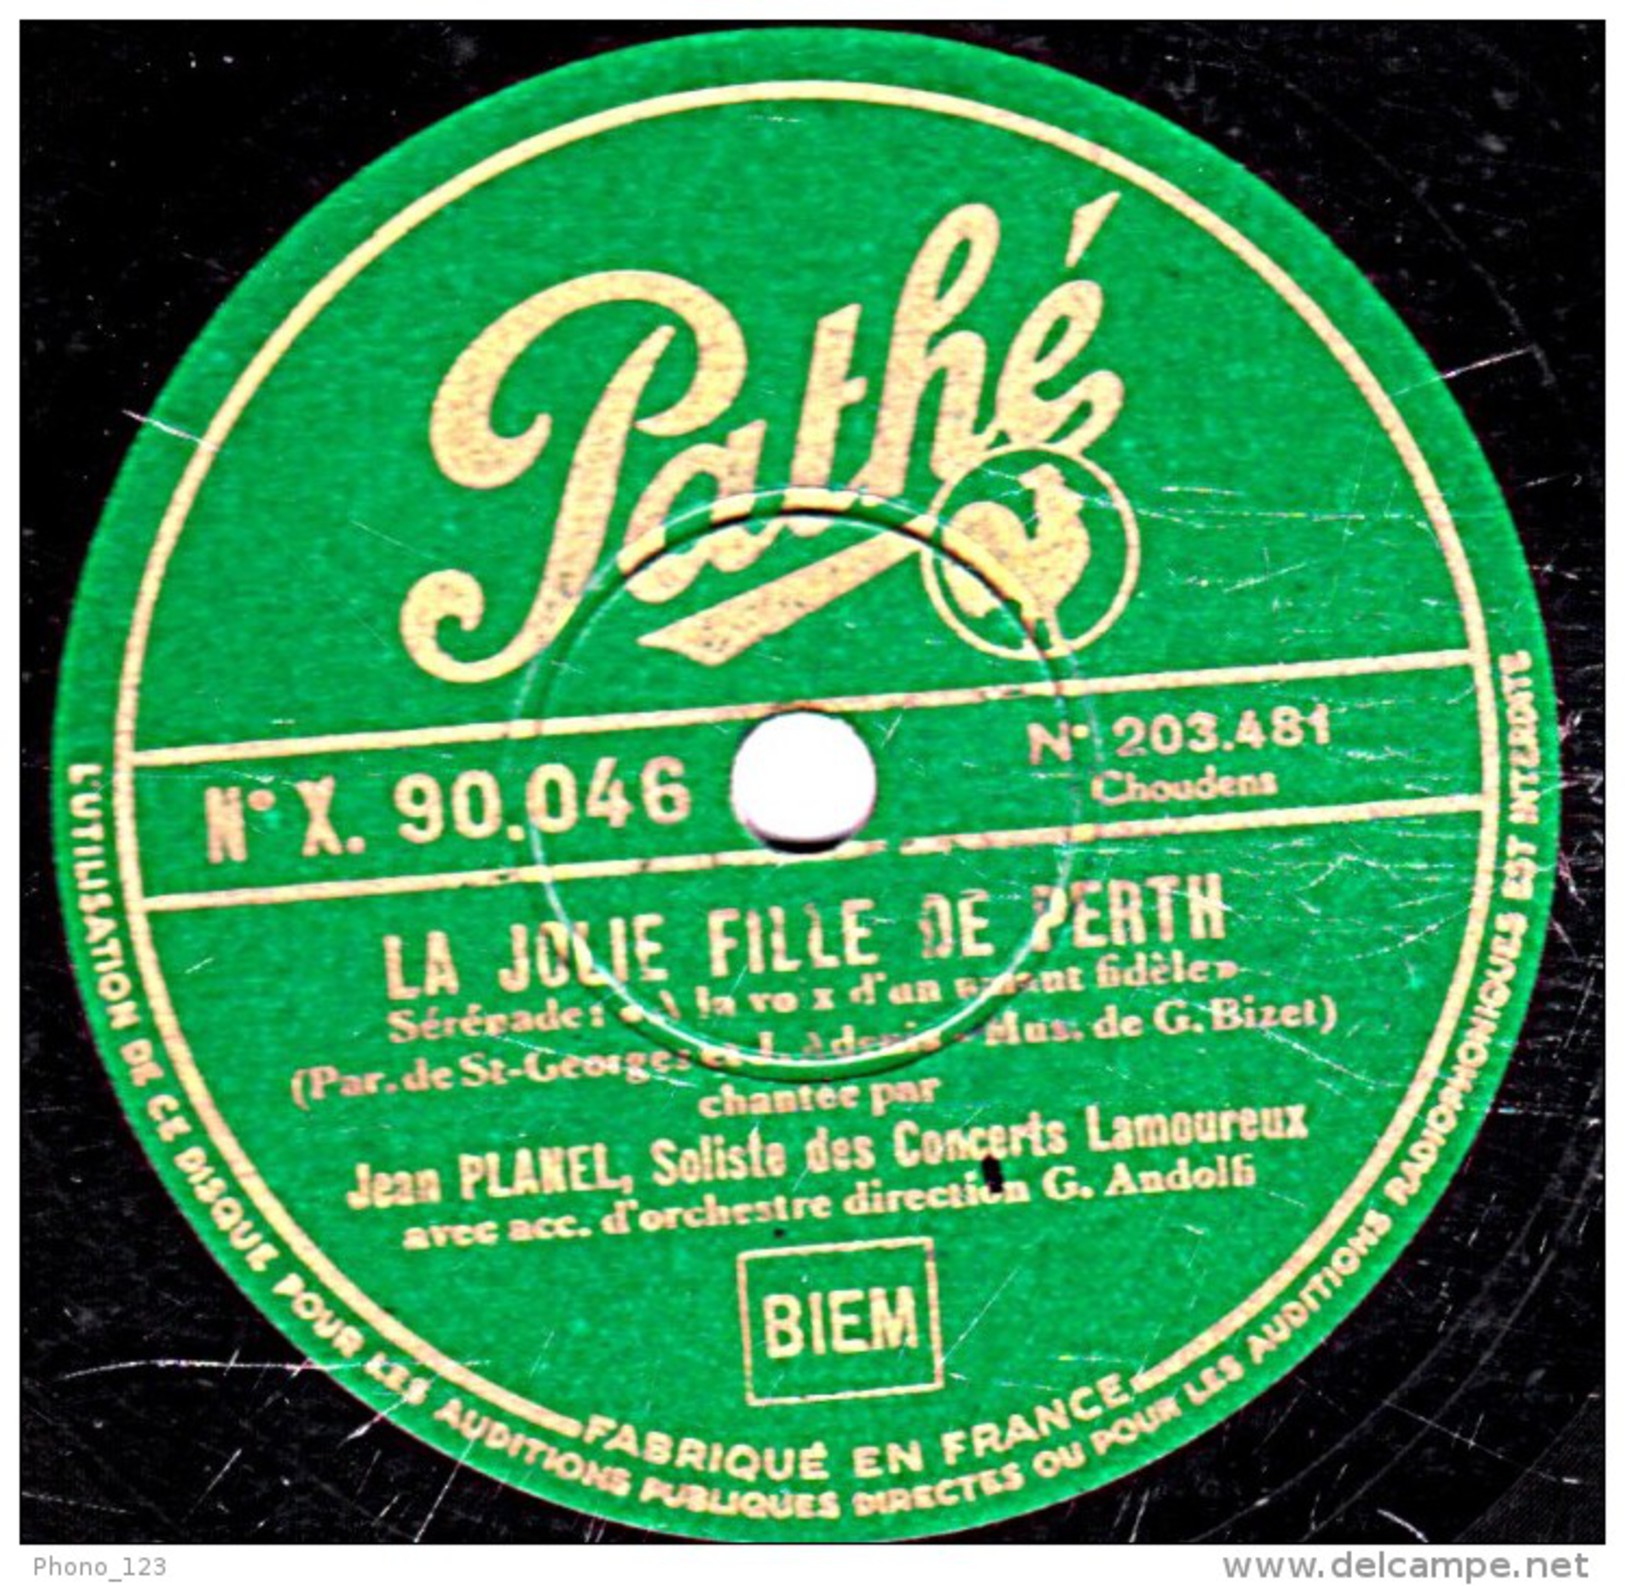 78 T.- 25 Cm - état B - Jean PLANEL - LA JOLIE FILLE DE PERTH - JOCELYN - 78 T - Disques Pour Gramophone